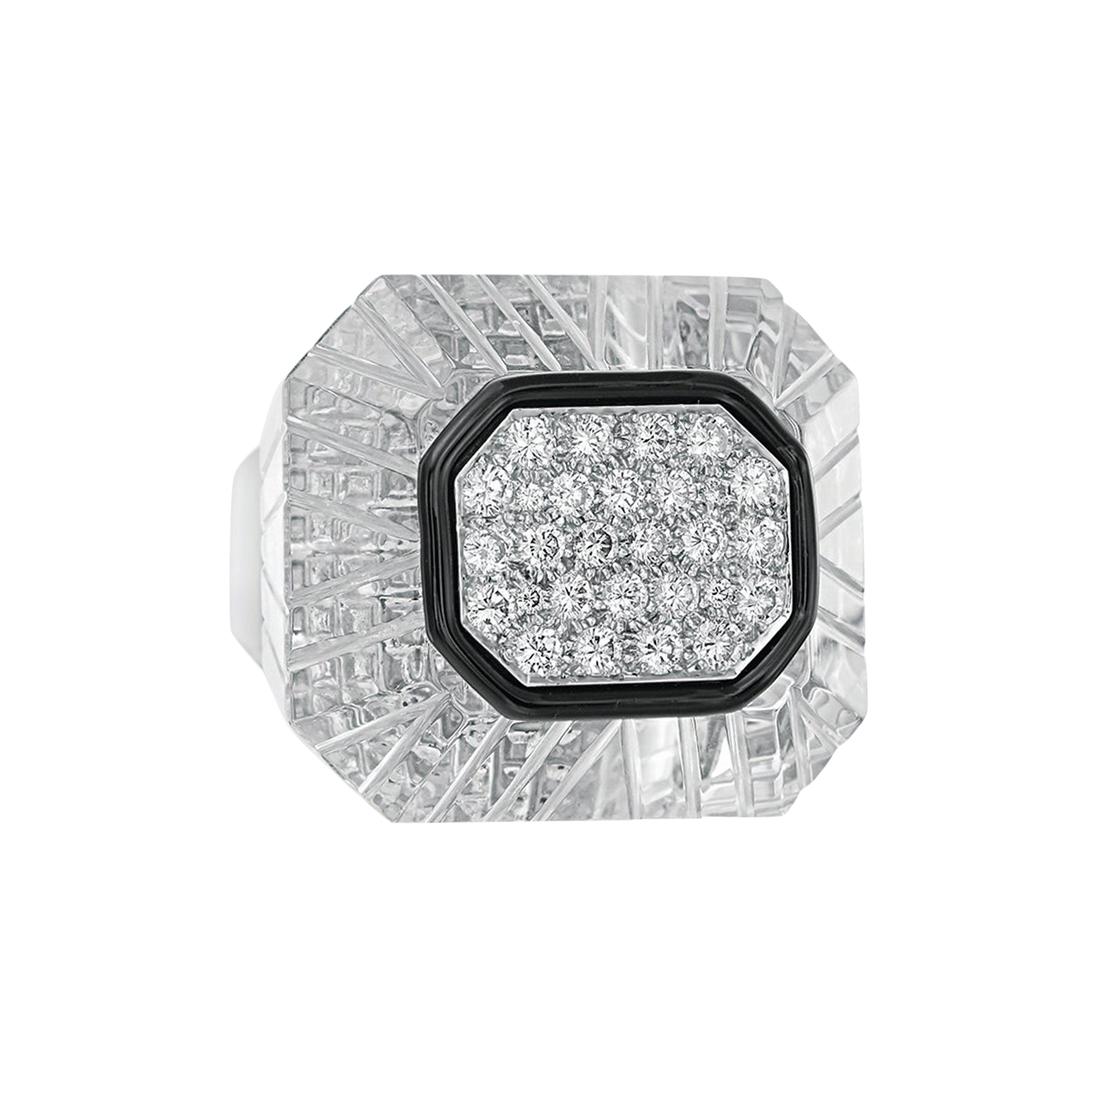 David Webb 18 Karat White Gold and Platinum Diamond Rock Crystal Ring